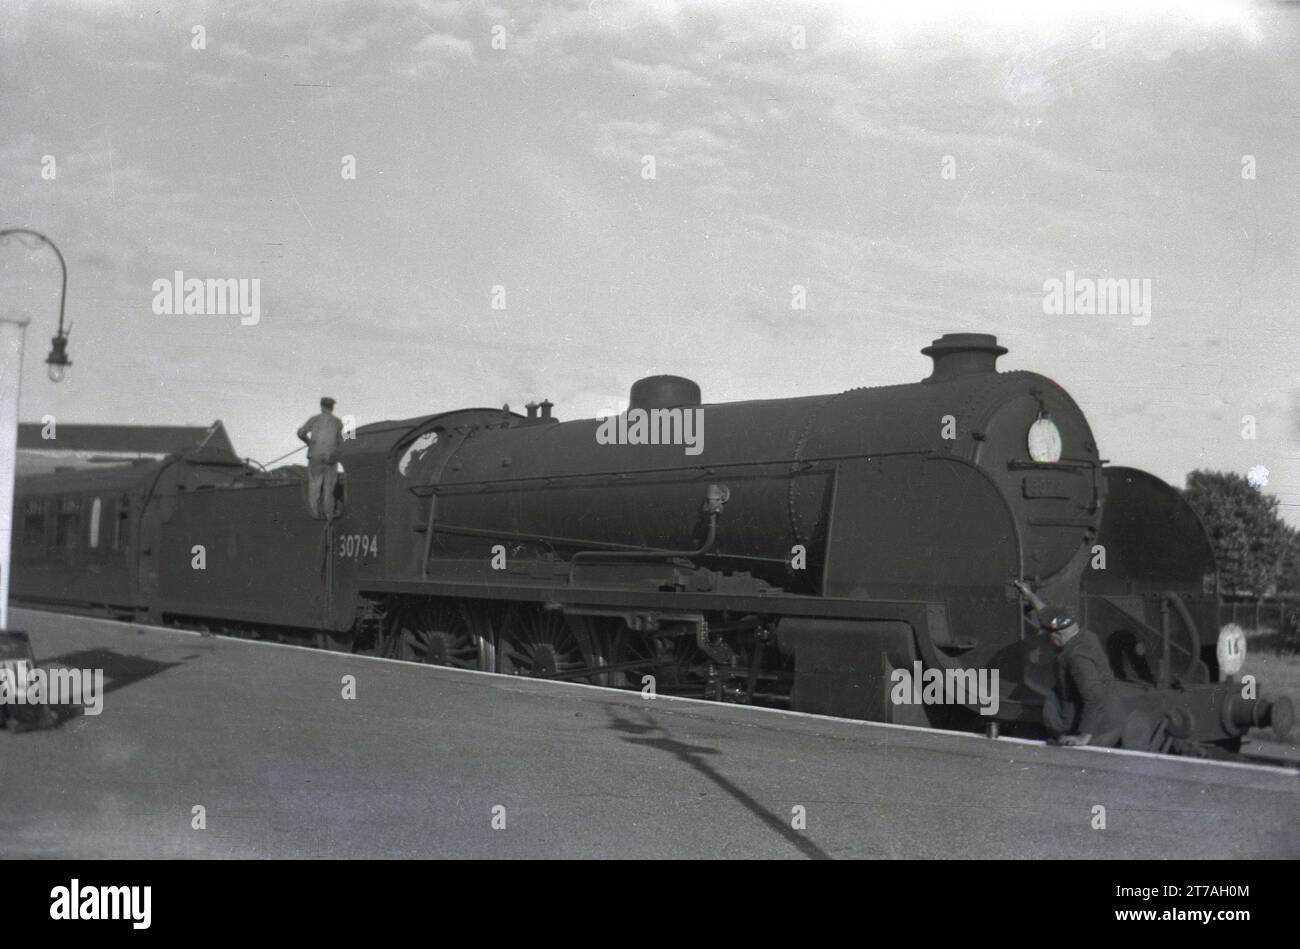 1950er Jahre, historisch, eine Dampflokomotive der Epoche, 30794, wartet auf einem Bahnsteig, England, Großbritannien. Die 4-6-0 King Arthur Class Lokomotive wurde 1926 für Southern Railways (794) in Dienst gestellt, bevor sie 30794 umbenannt wurde, als 1949 British Railways gegründet wurde. Sie wurde 1960 zurückgezogen. Stockfoto